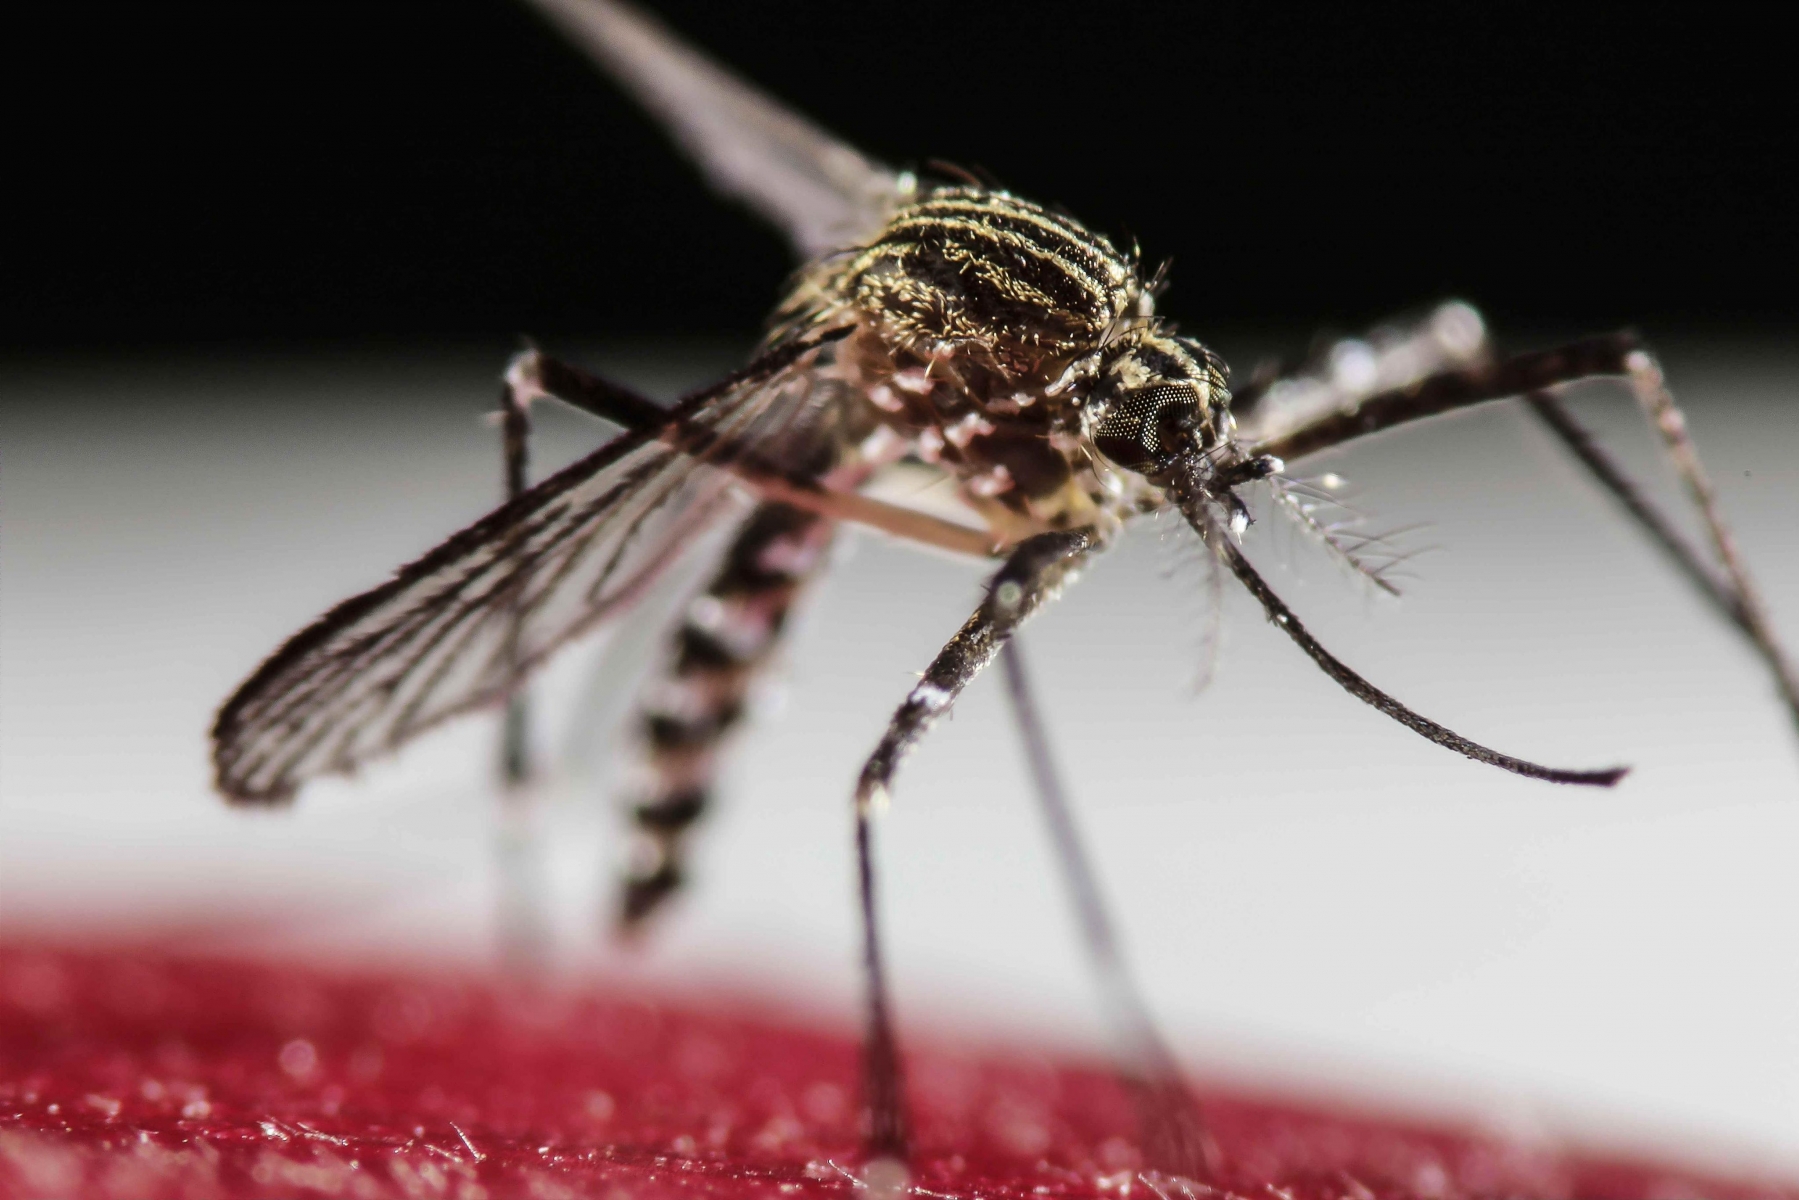 Tout comme le virus Zika, la dengue est transmise par le moustique tigre.